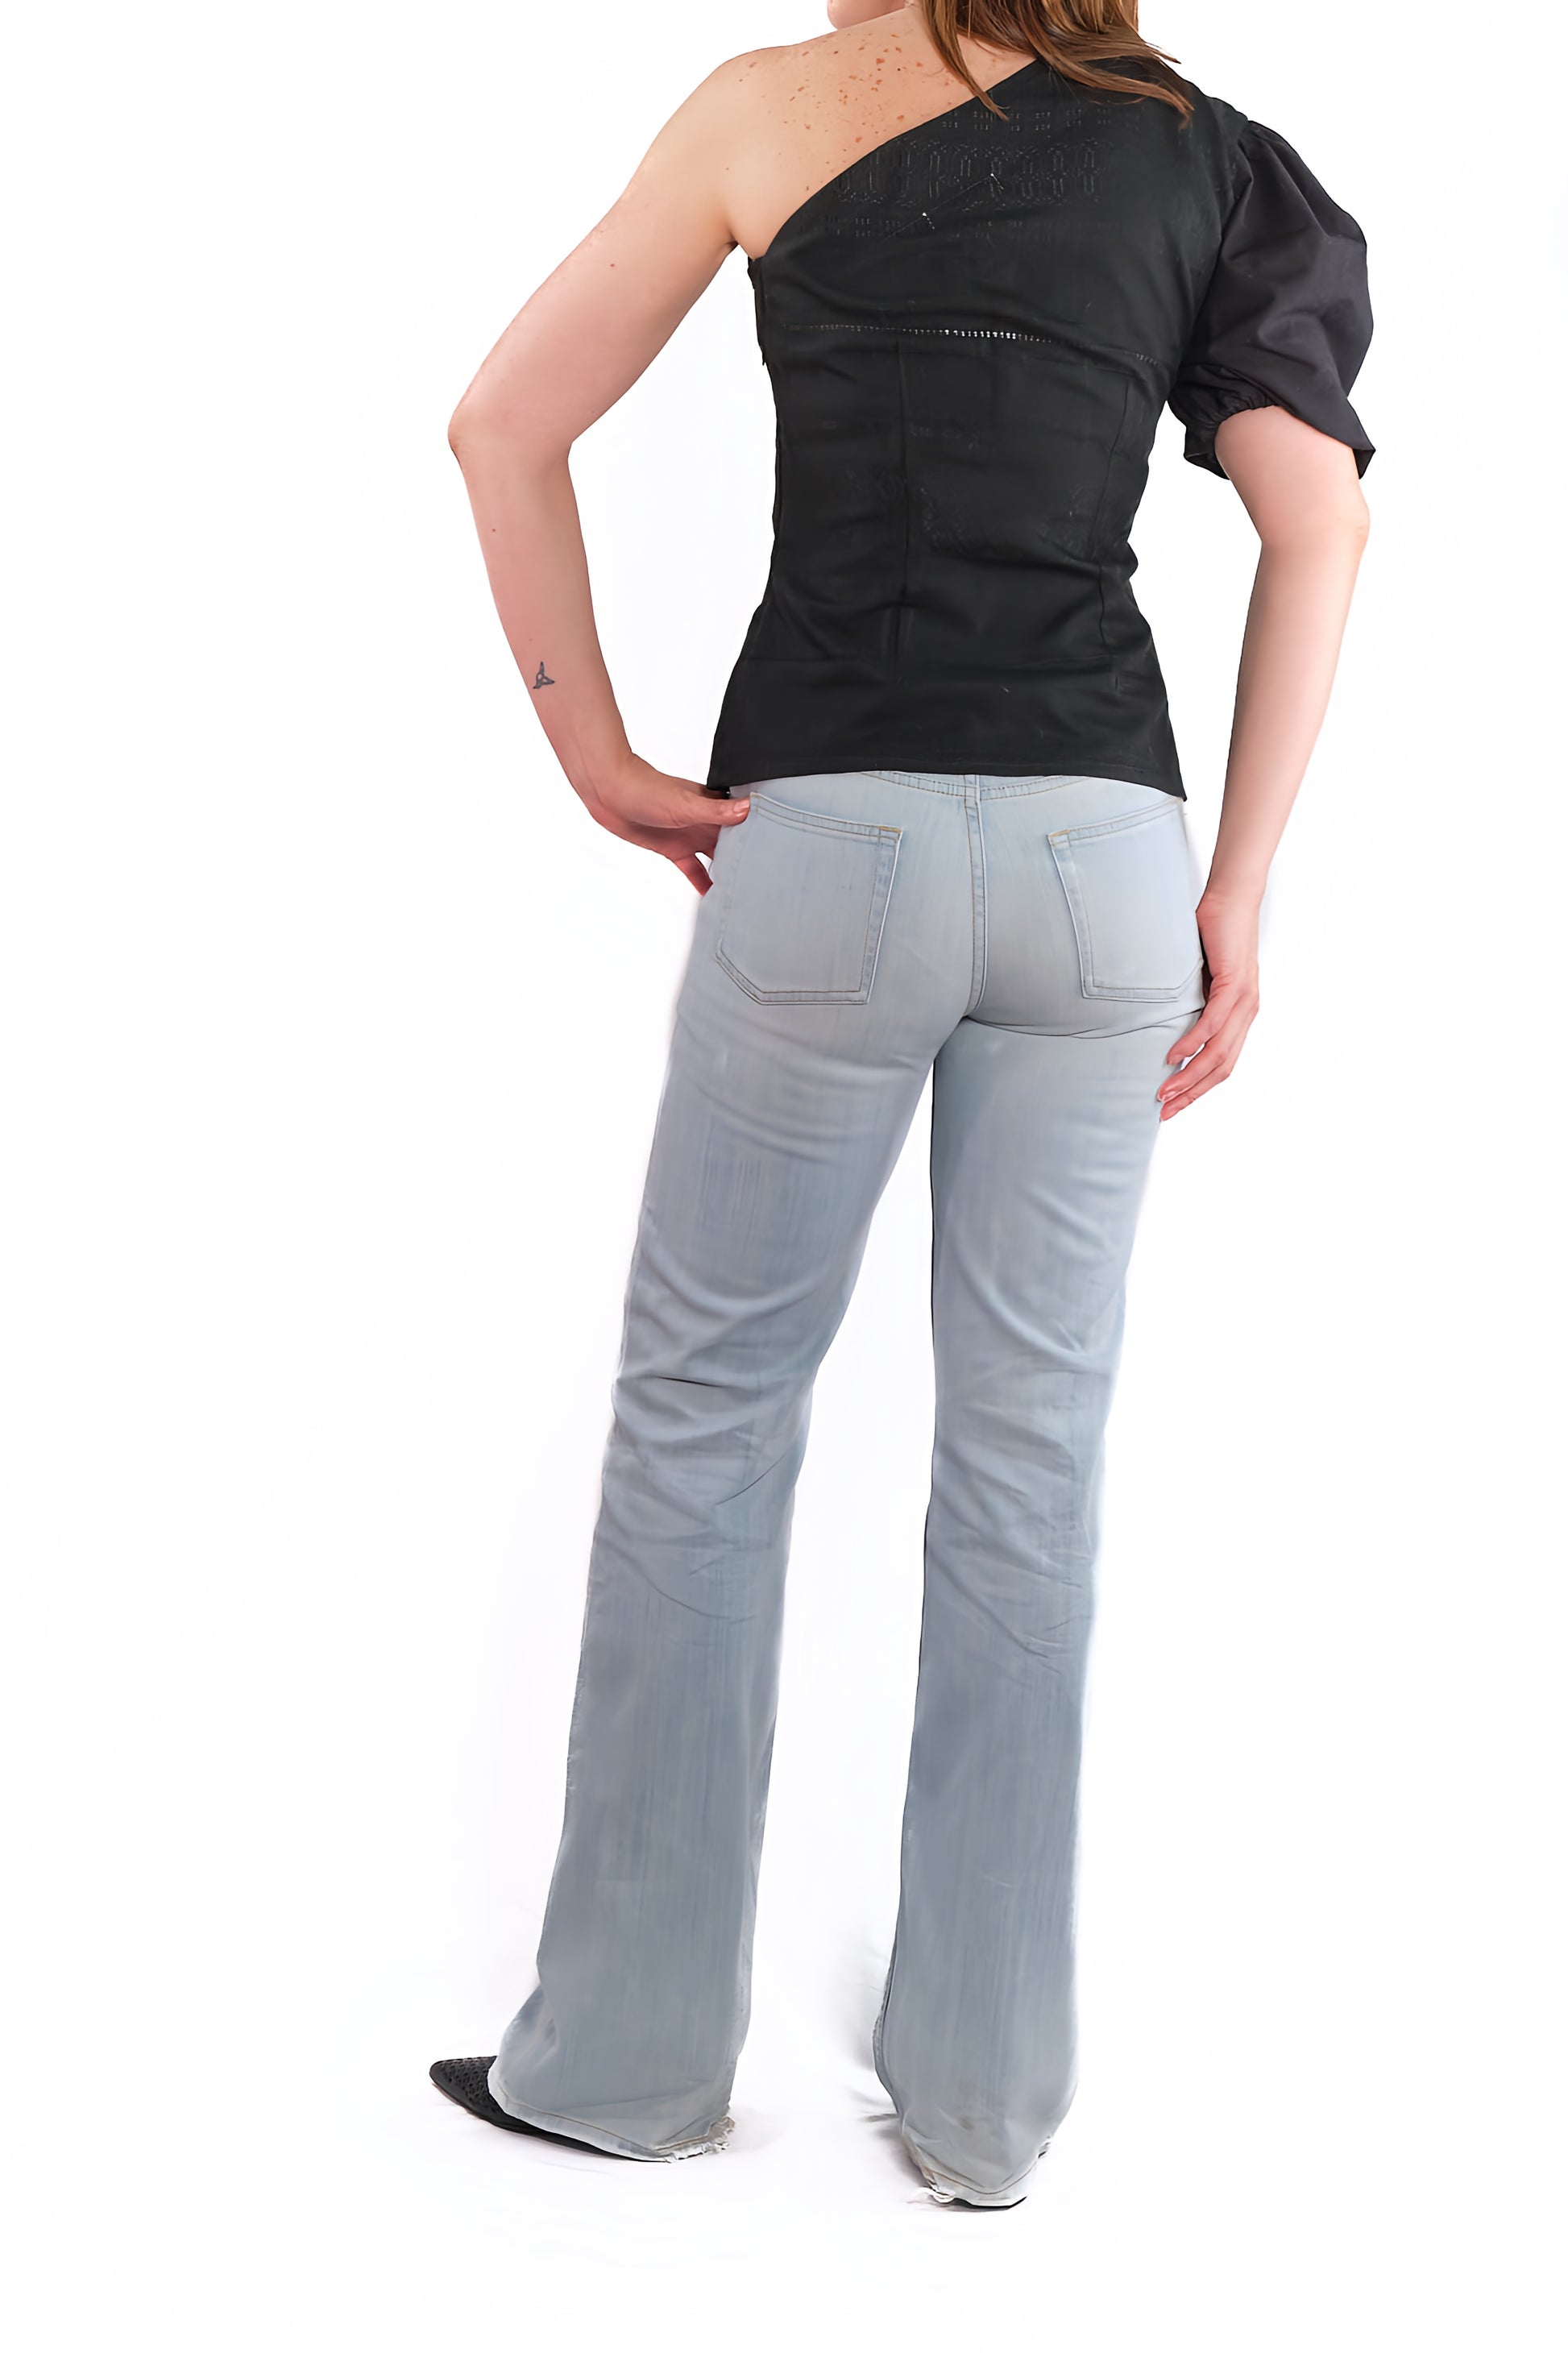 Mitla blouse black with bare shoulder back